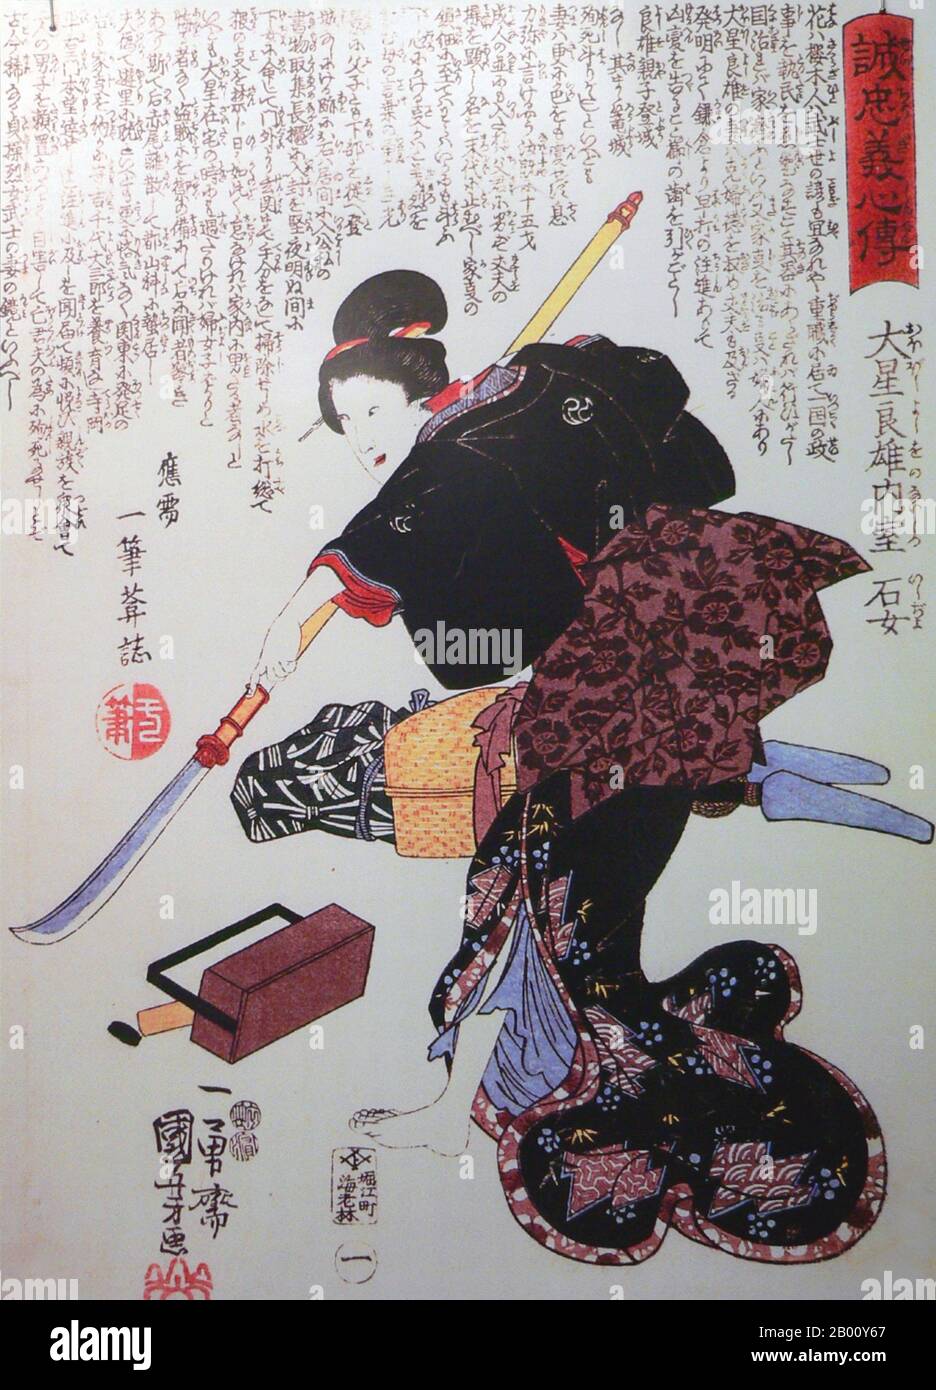 Japan: Ishi-jo, Ehefrau von Oboshi Yoshio, einem der '47 Ronin'. Ukiyo-e Holzschnitt von Utagawa Kuniyoshi (c. 1797-1861), 1848. Onna-Bugeisha oder weibliche Samurai, bildeten einen kleinen Teil der traditionellen japanischen Oberschicht. Viele Ehefrauen, Witwen, Töchter und Rebellen antworteten dem Ruf der Pflicht, indem sie sich in der Regel an der Seite von Samurai-Männern in einen Kampf einmisteten. Sie waren Mitglieder der Sushi (Samurai)-Klasse im feudalen Japan und wurden im Einsatz von Waffen ausgebildet, um ihren Haushalt, ihre Familie und ihre Ehre in Kriegszeiten zu schützen. Sie stellten auch eine Abweichung von der traditionellen japanischen "Hausfrau"-Rolle dar. Stockfoto